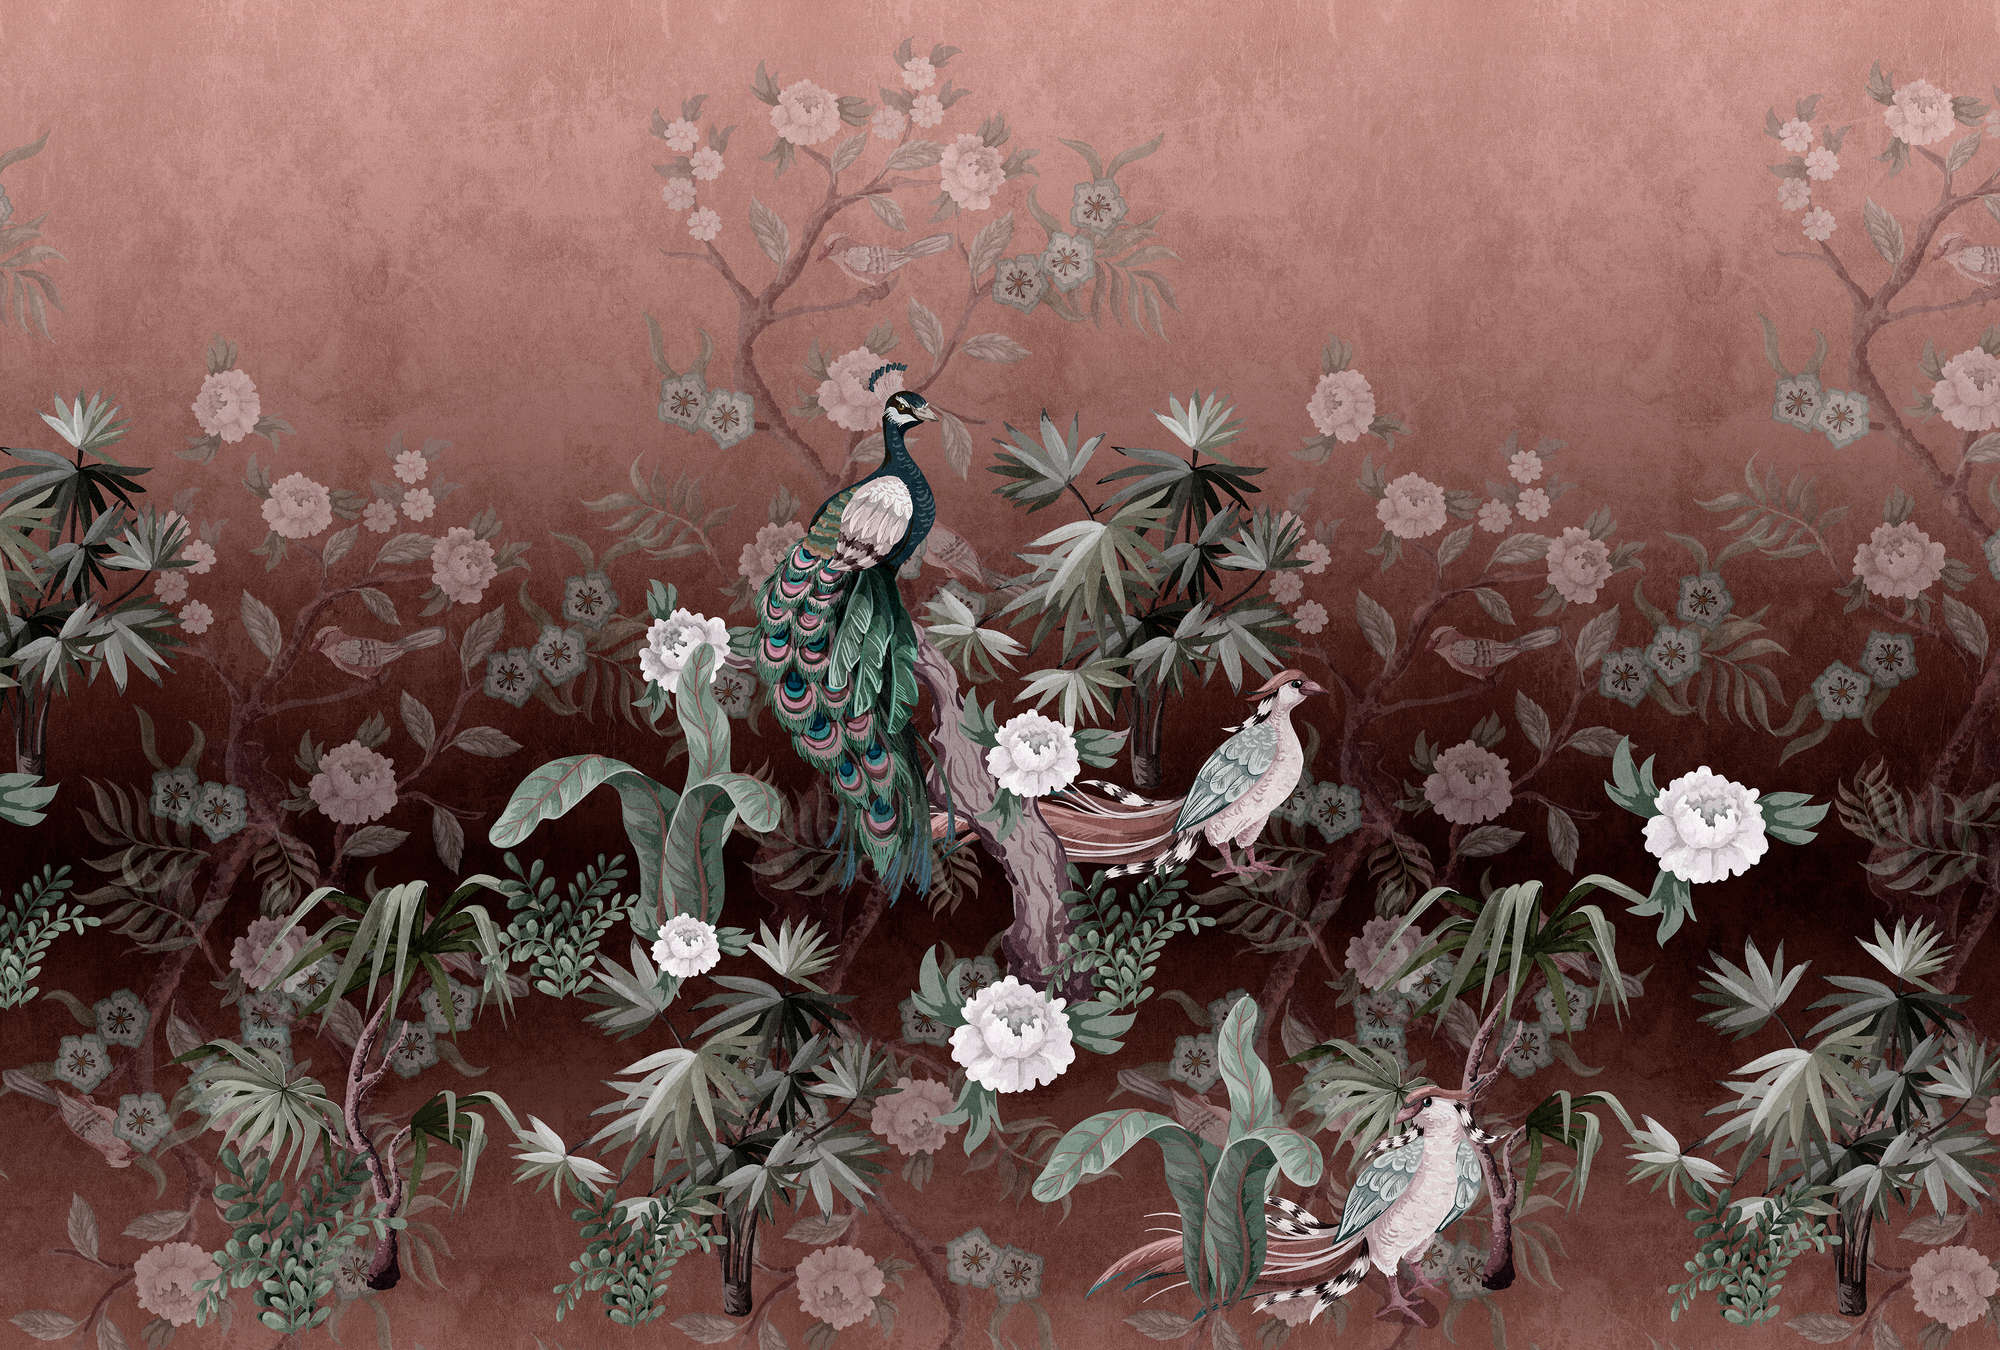             Isla del pavo real 1 - Papel pintado Jardín del pavo real con flores en rosa viejo
        